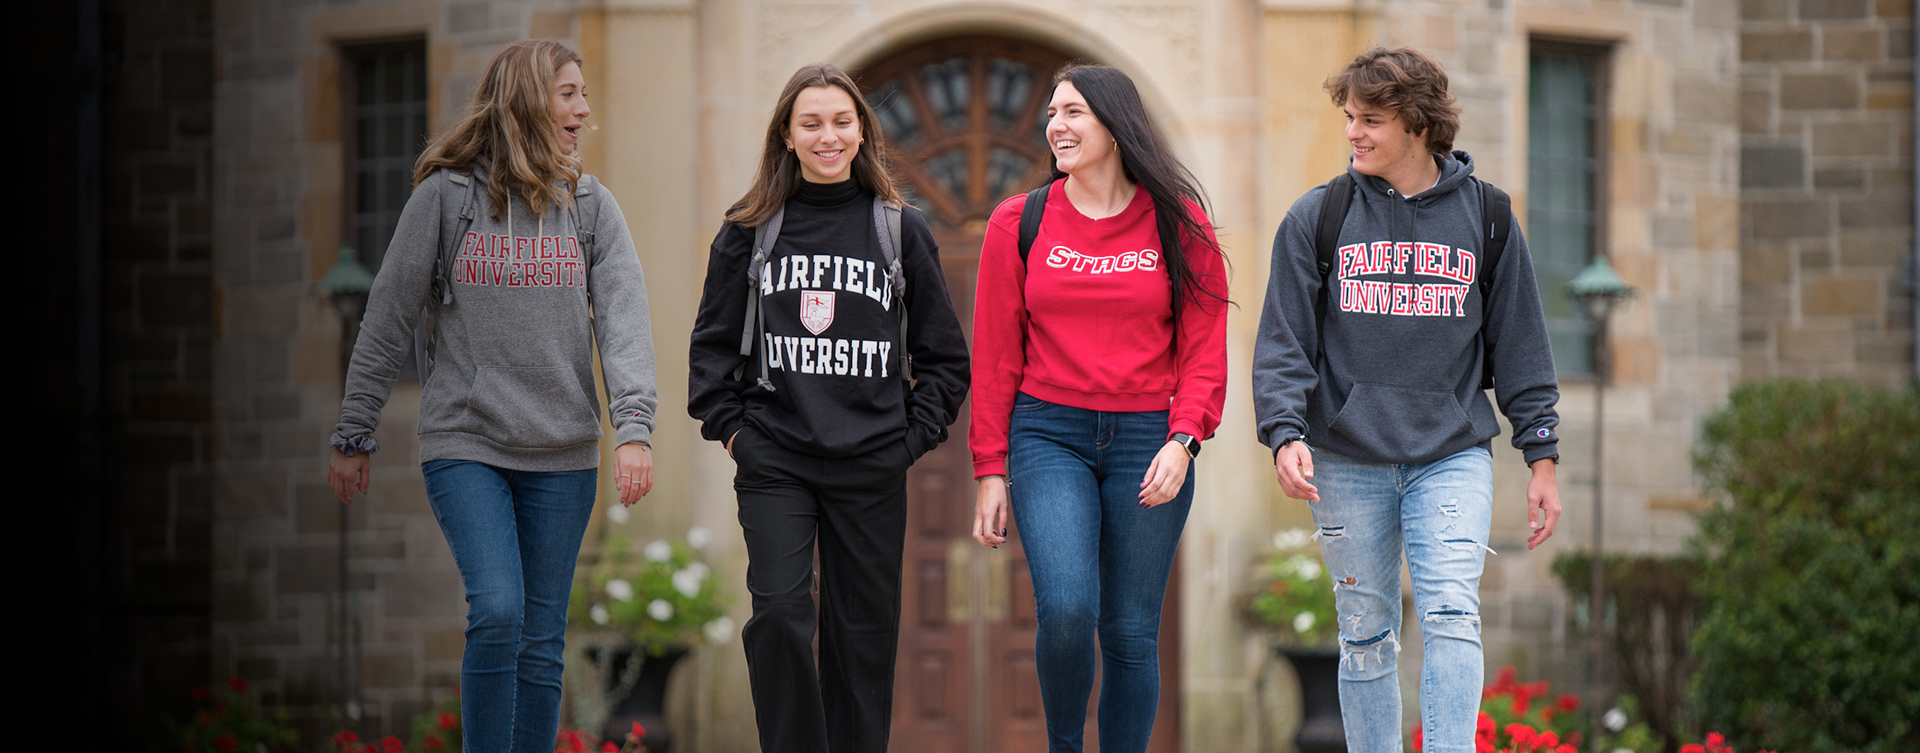 Fairfield Students walking around Fairfield University campus.